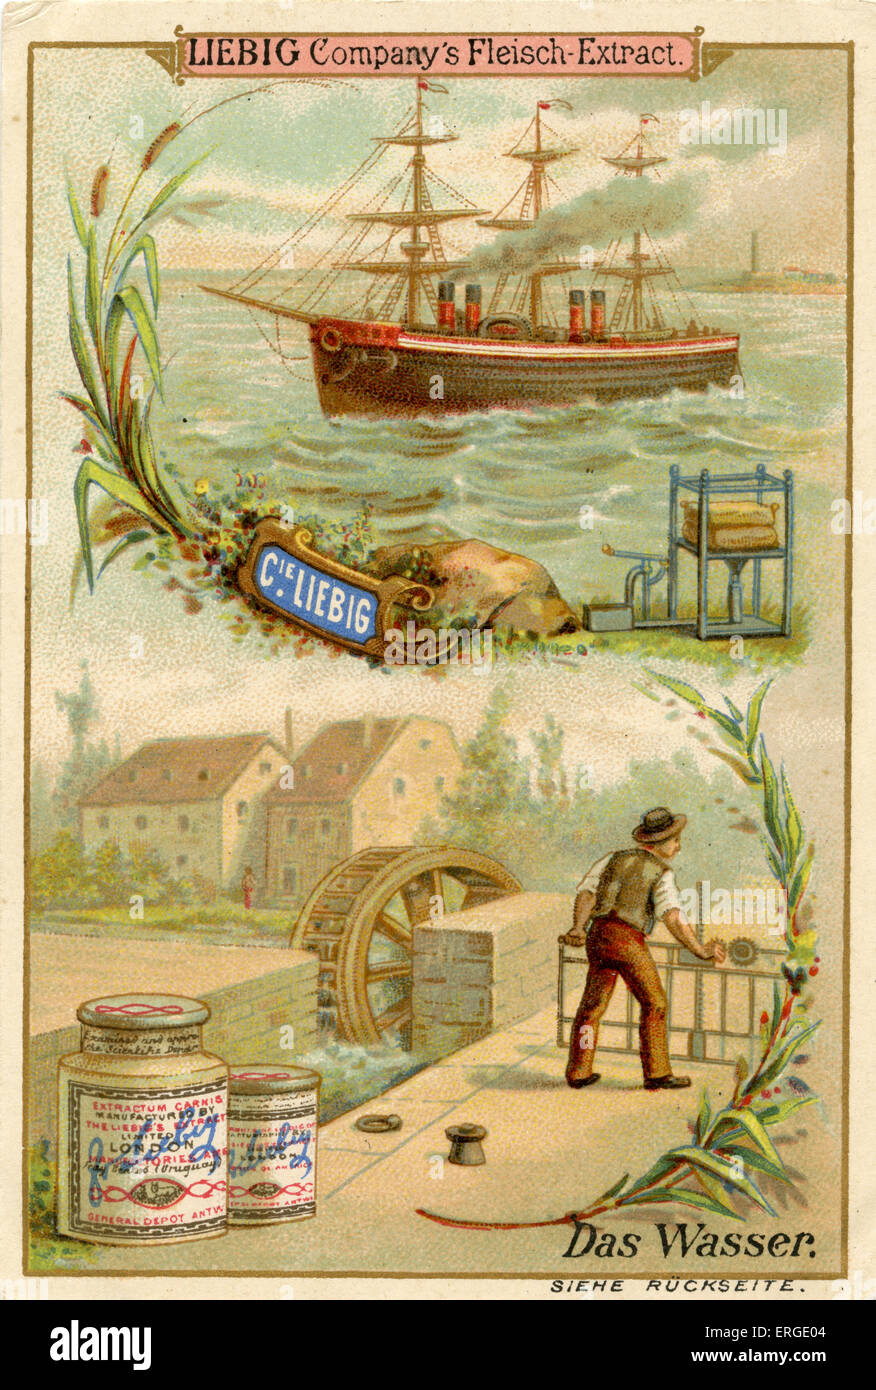 Acqua ('Dcome Wasser") - Società di Liebig carte collezionabili, risorse naturali serie. Pubblicato nel 1892. Foto Stock